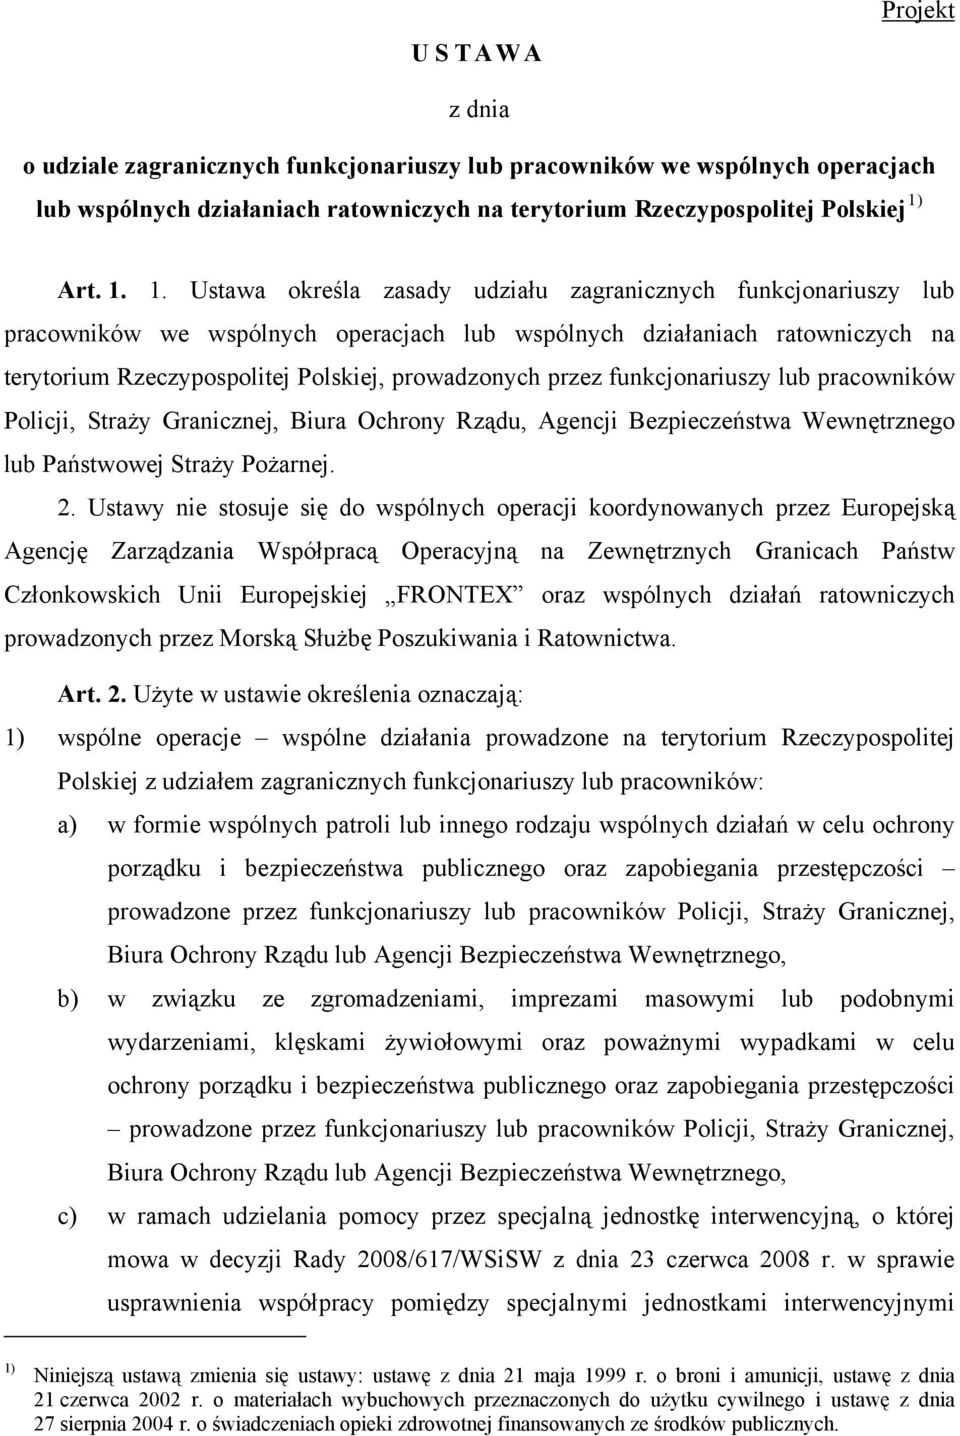 1. Ustawa określa zasady udziału zagranicznych funkcjonariuszy lub pracowników we wspólnych operacjach lub wspólnych działaniach ratowniczych na terytorium Rzeczypospolitej Polskiej, prowadzonych